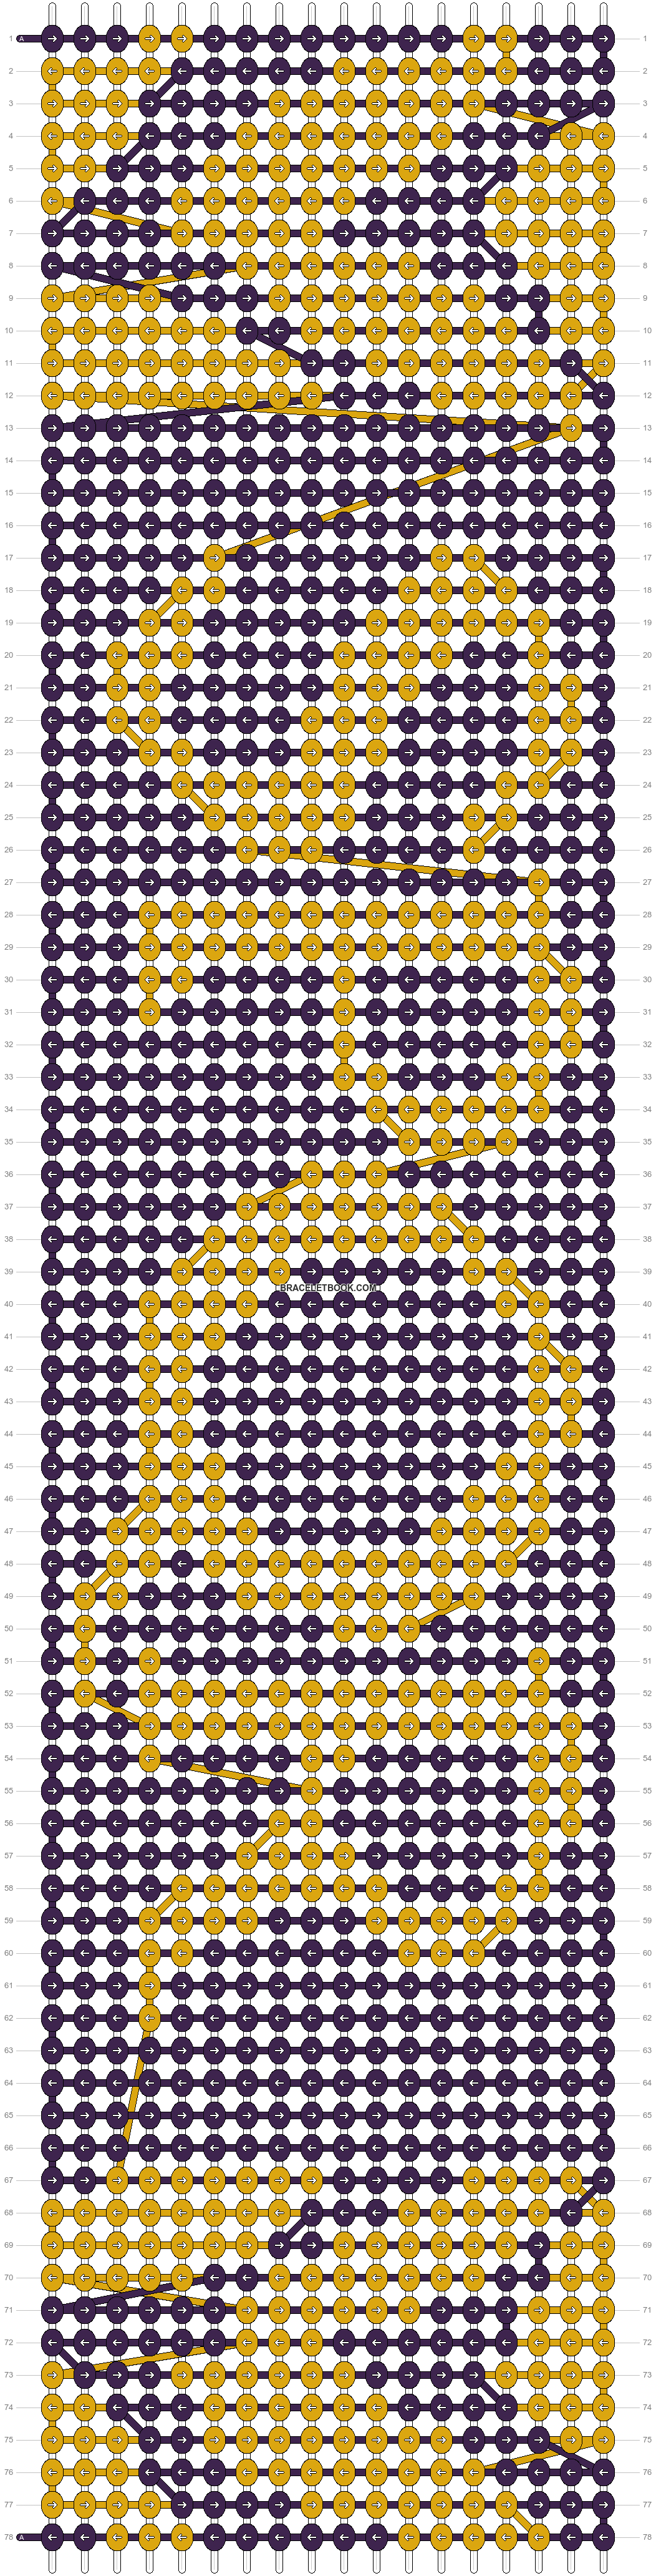 Alpha pattern 20631  BraceletBook